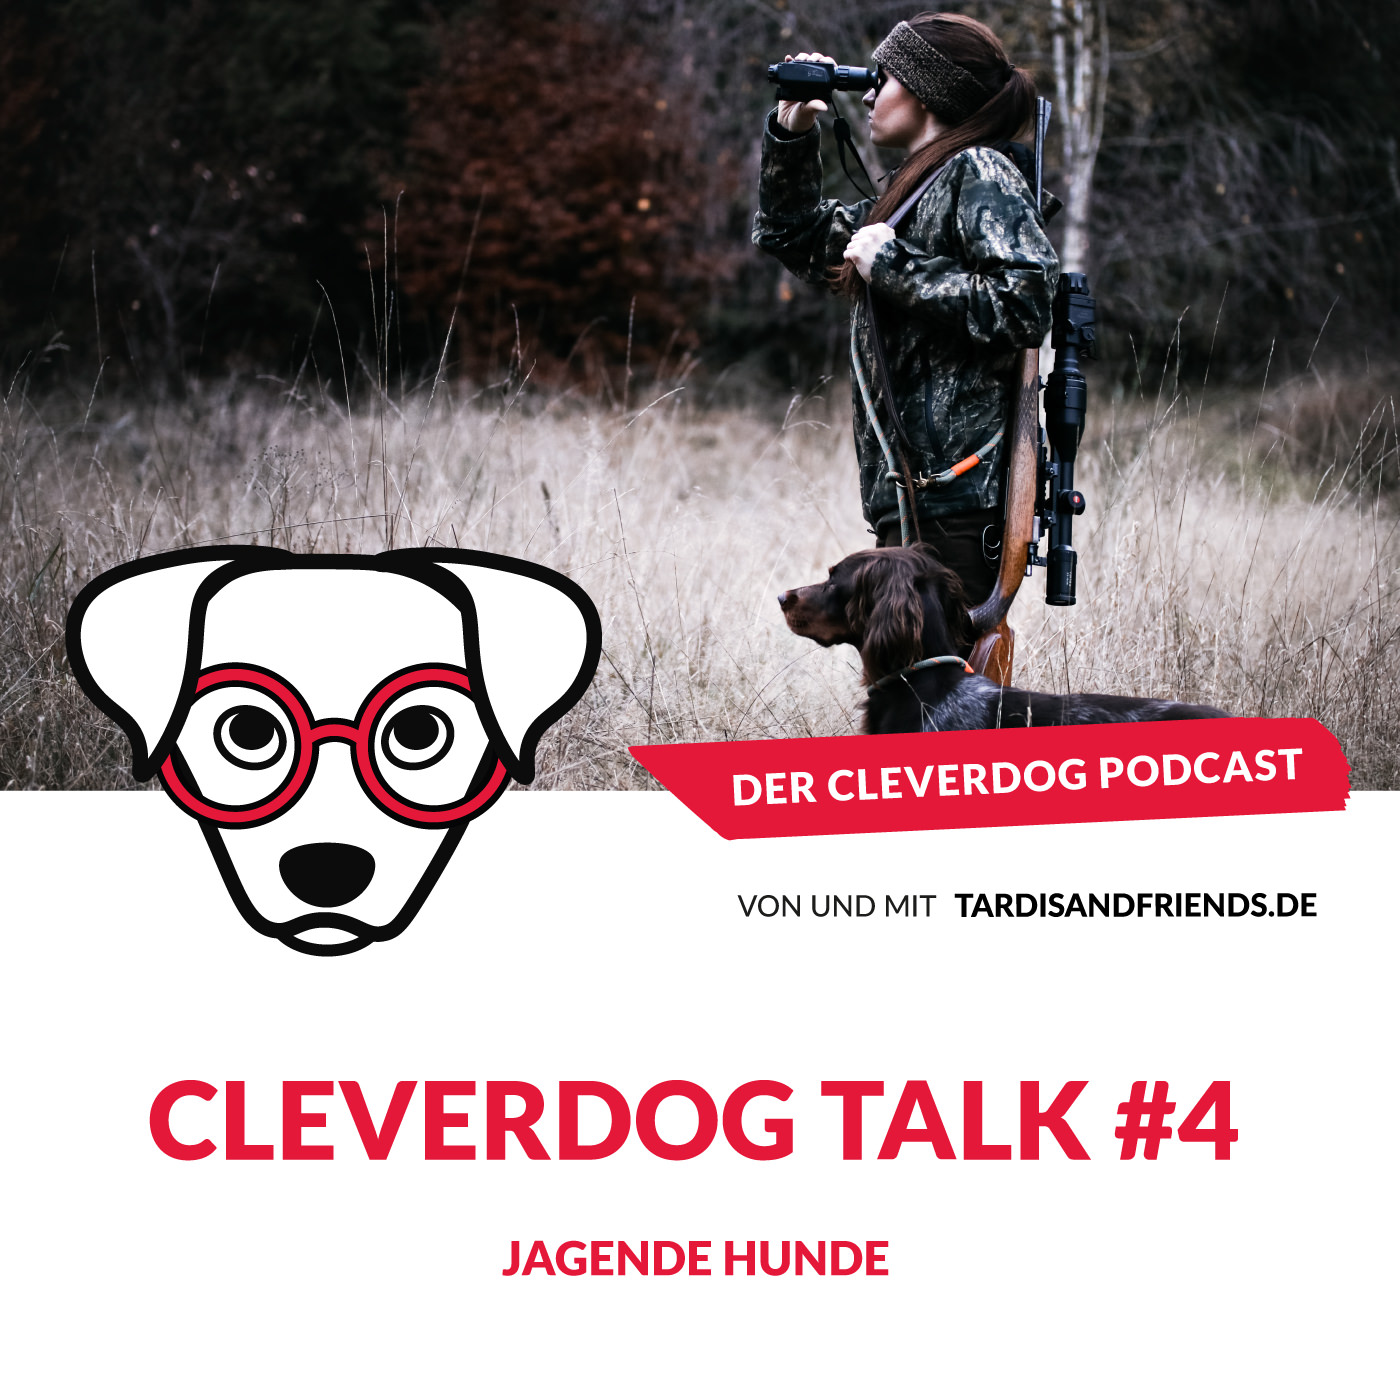 Cleverdog Talk #4 – Jagende Hunde